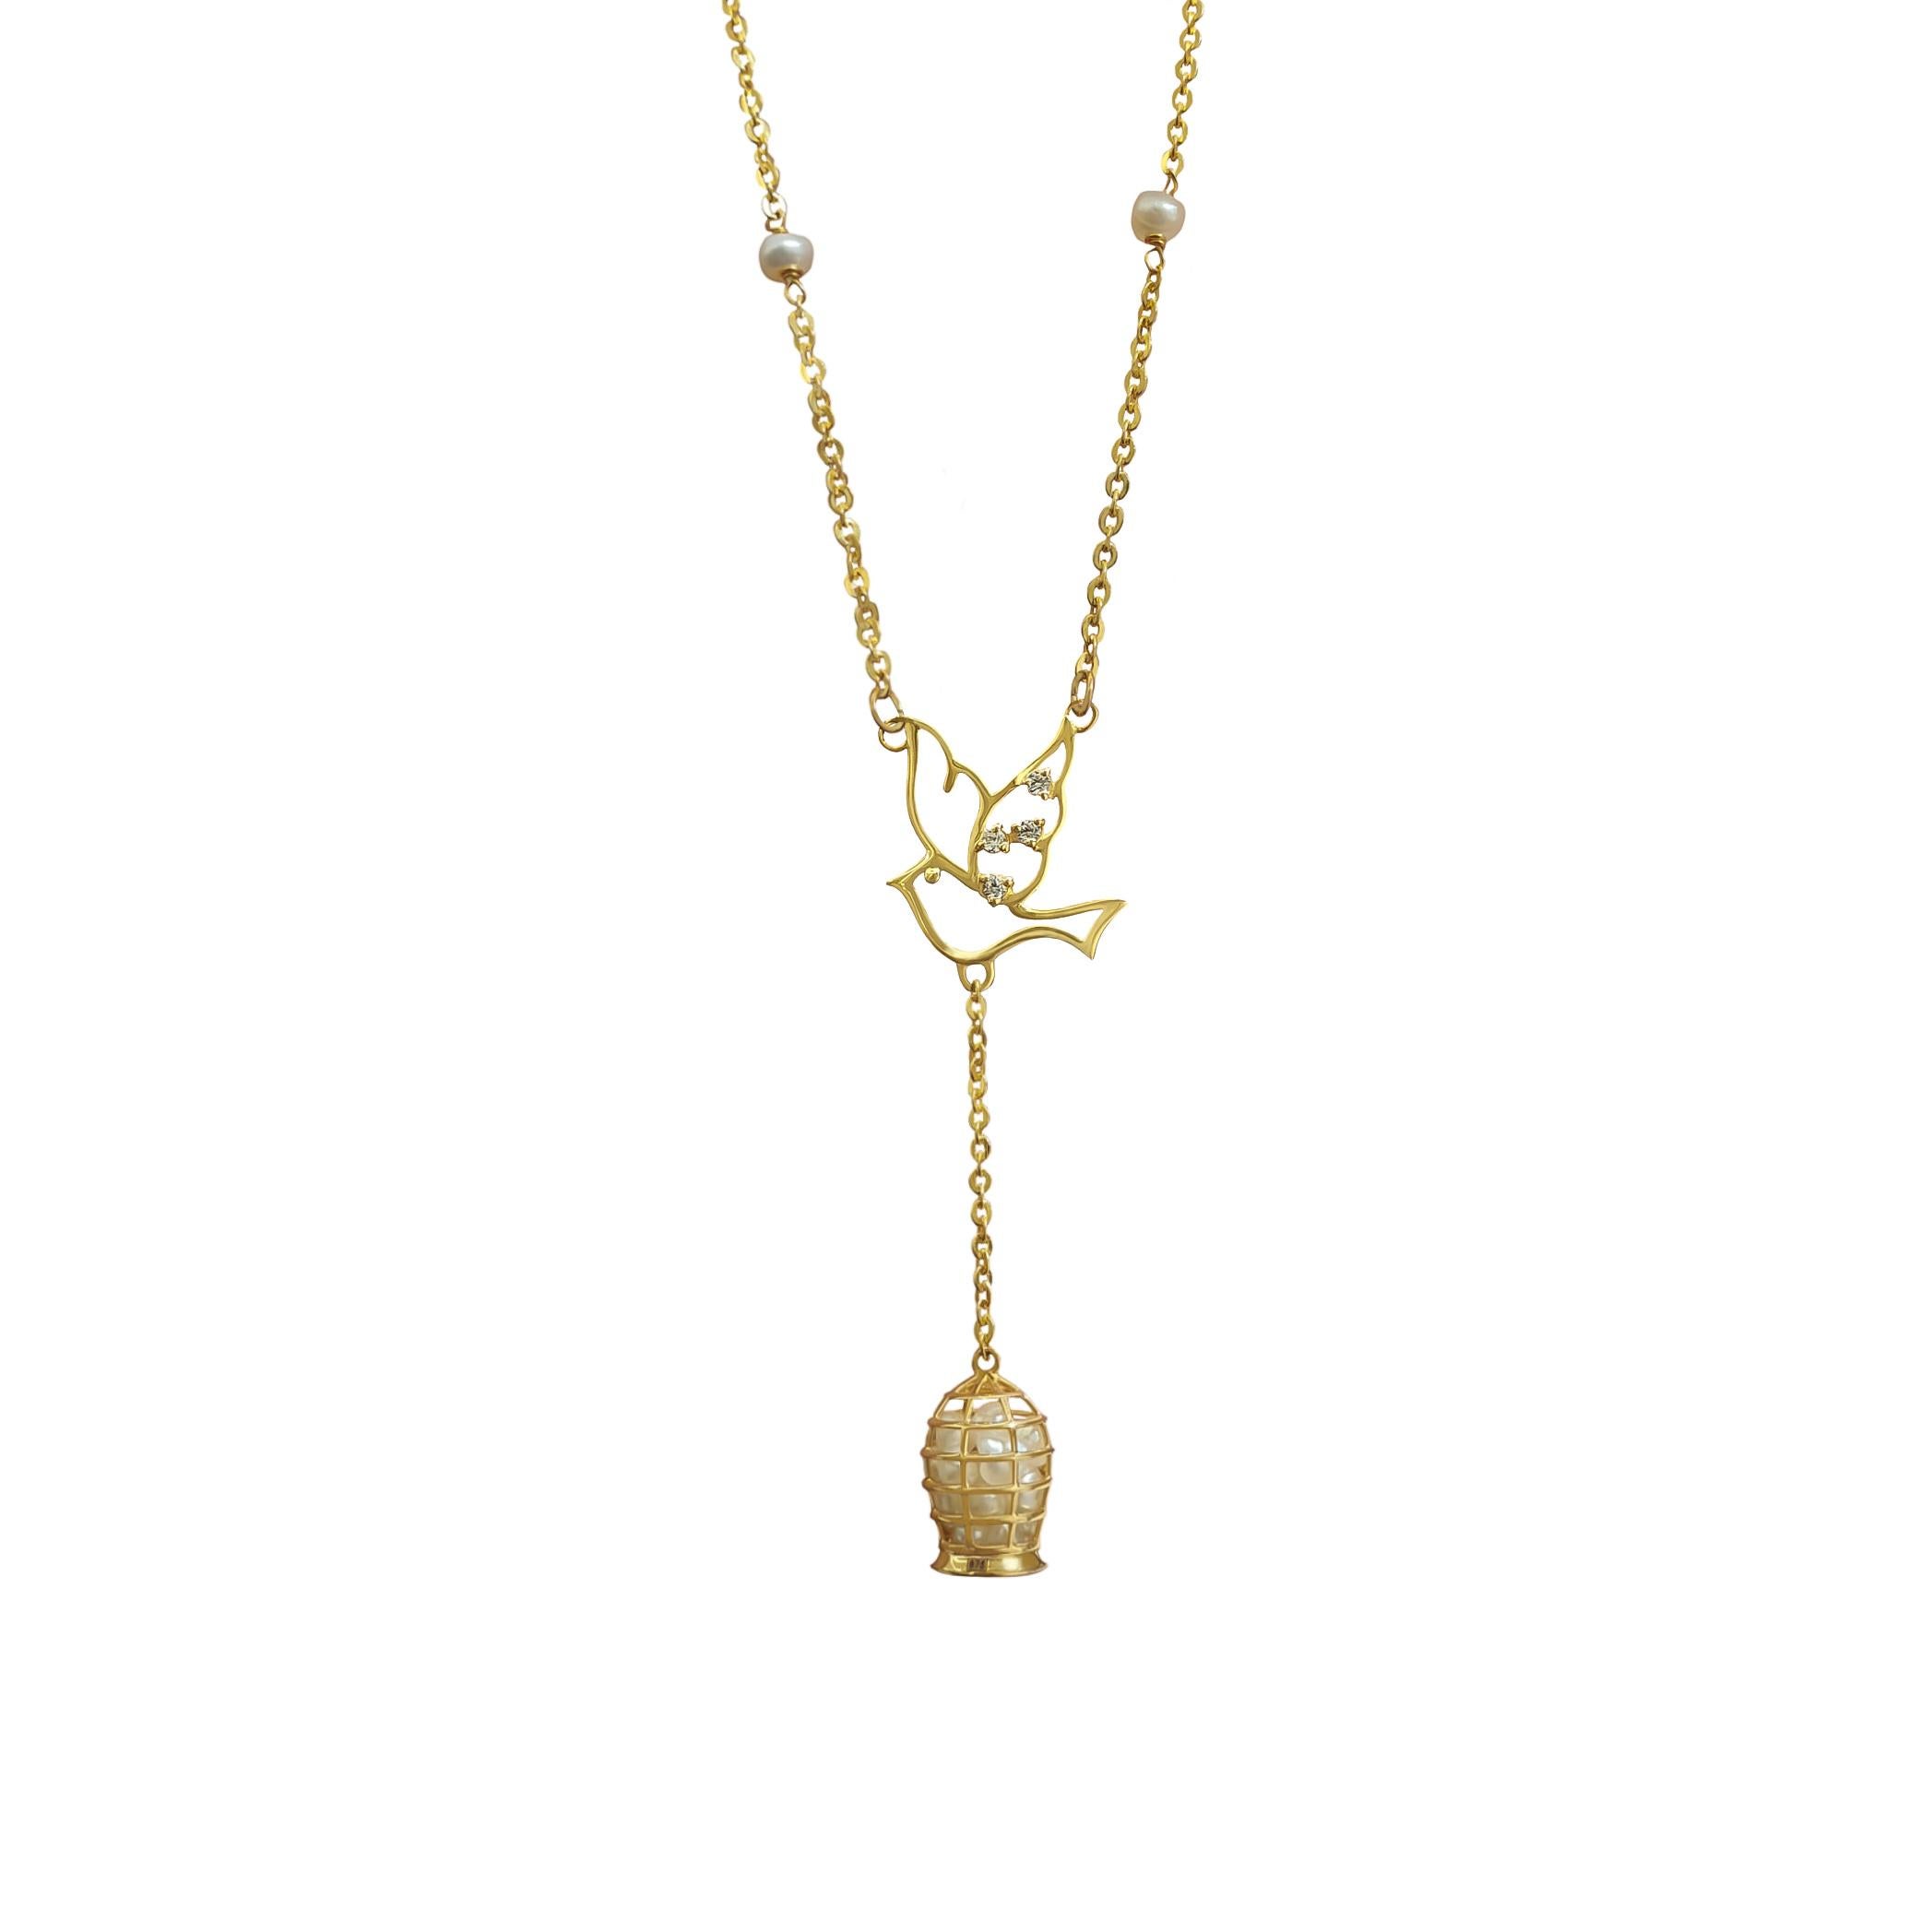 Le collier Luck of pearls est réalisé en or jaune 22k.
Magnifique œuvre d'art unique en son genre.

Une colombe en or ornée de diamants naturels porte la cage de la chance remplie de perles naturelles de Bahreïn. La pièce est terminée par une chaîne